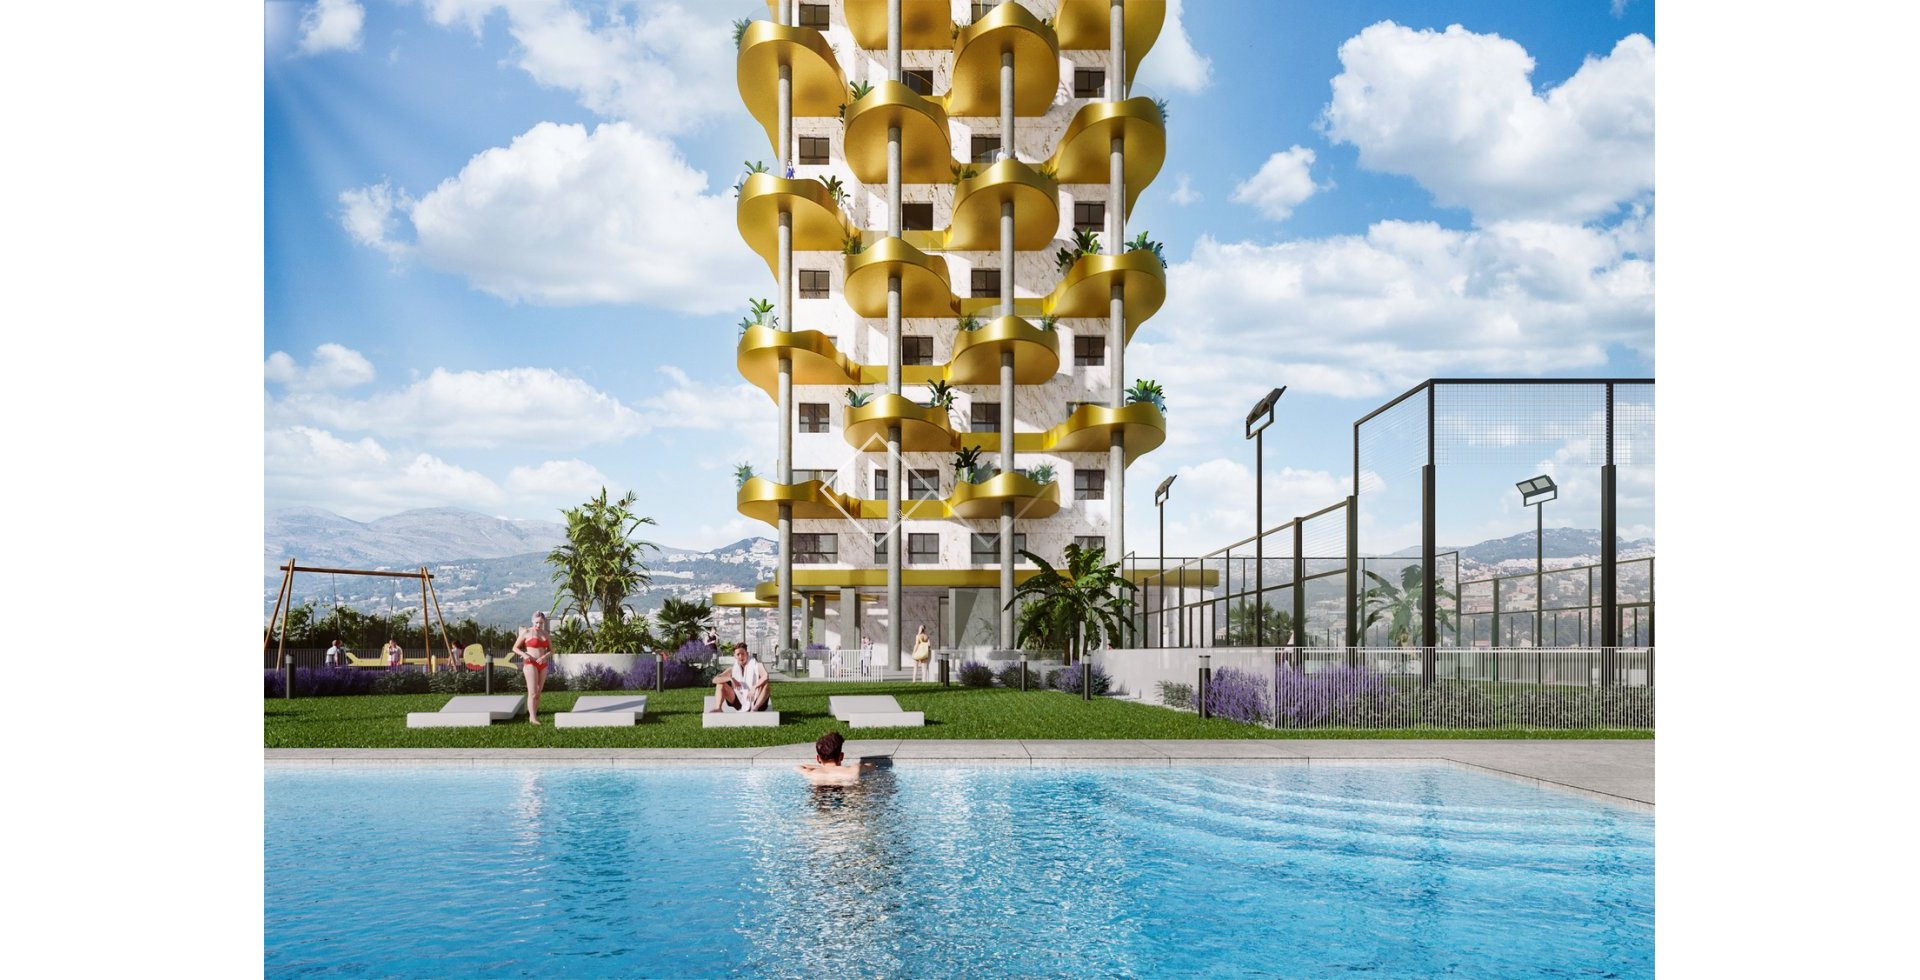 piscine et paddle - Appartements nouvellement construits à vendre dans un complexe de luxe remarquable, Calpe